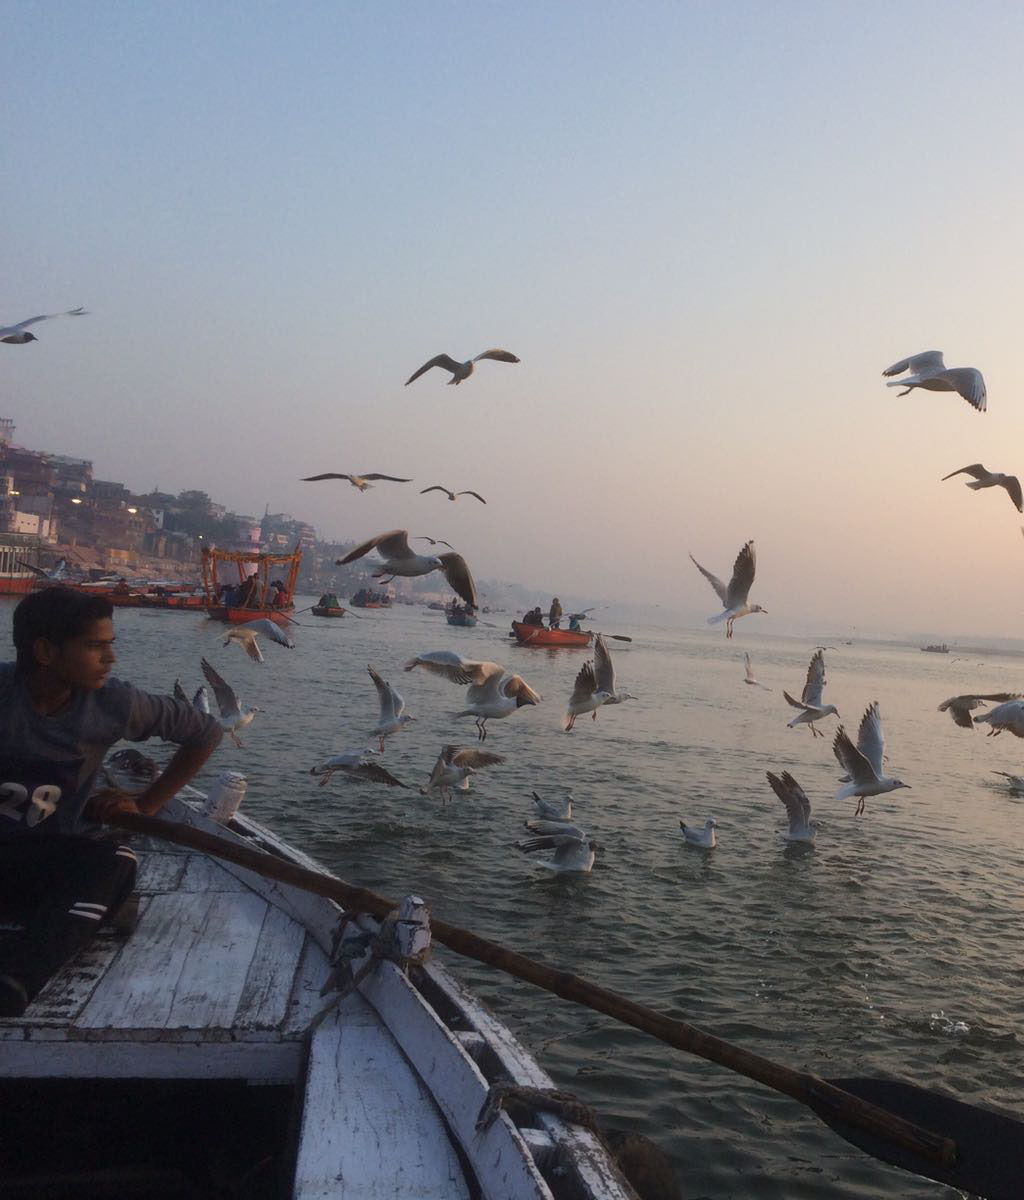 Aun lado del Ganges no hay nada, al otro lado está la ciudad de Benarés o Varanasi, y las gaviotas se aceran a los botes de remos.